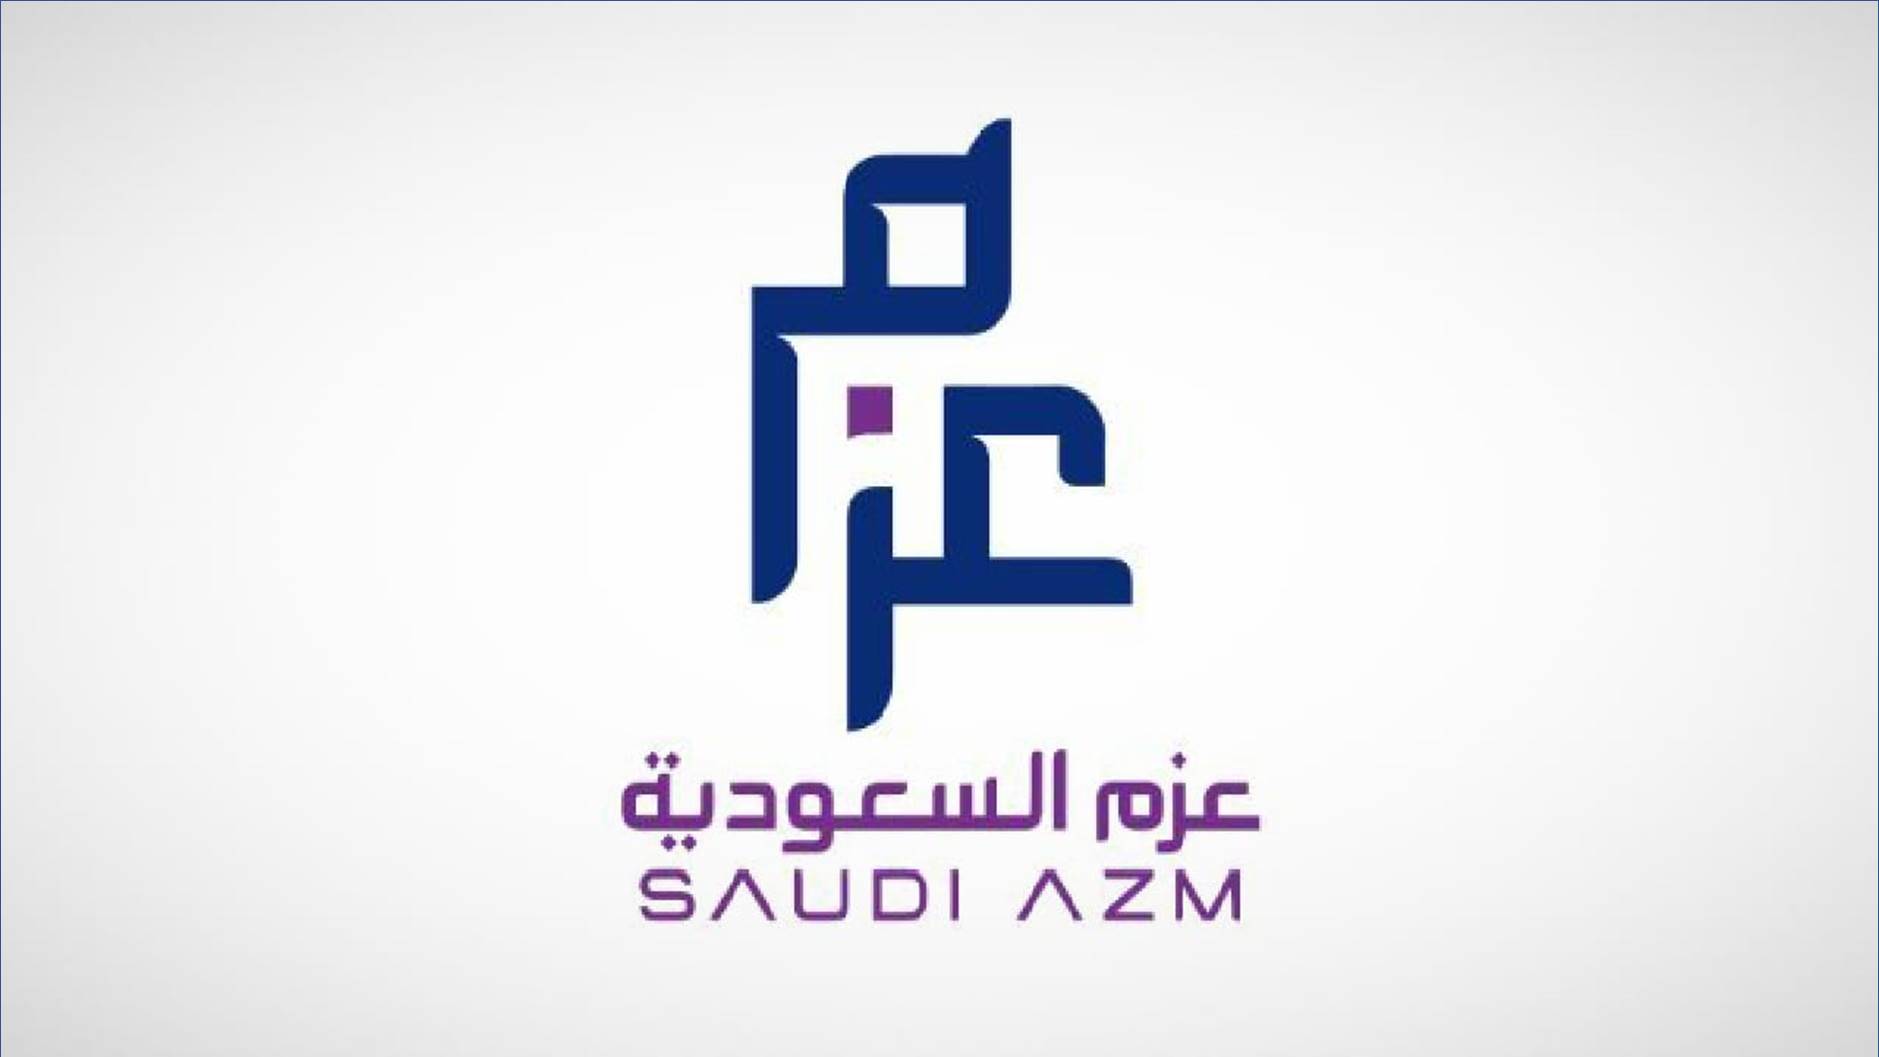 بدء التقديم ببرنامج تطوير في شركة عزم السعودية منتهي بالتوظيف للرجال والنساء